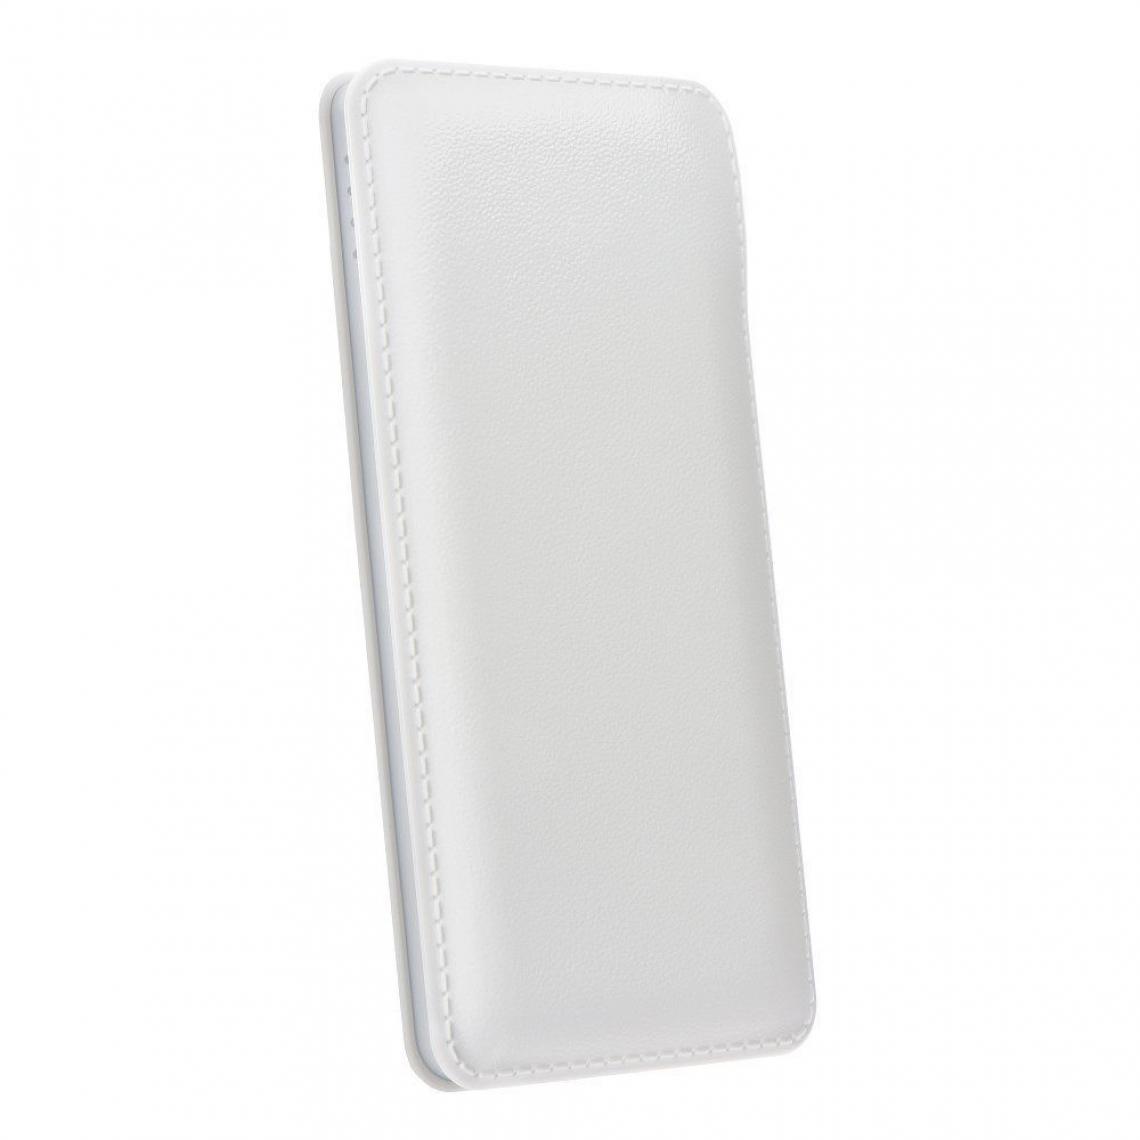 Ozzzo - Chargeur batterie externe 30000 mAh powerbank ozzzo blanc pour Xiaomi Redmi Y2 - Autres accessoires smartphone